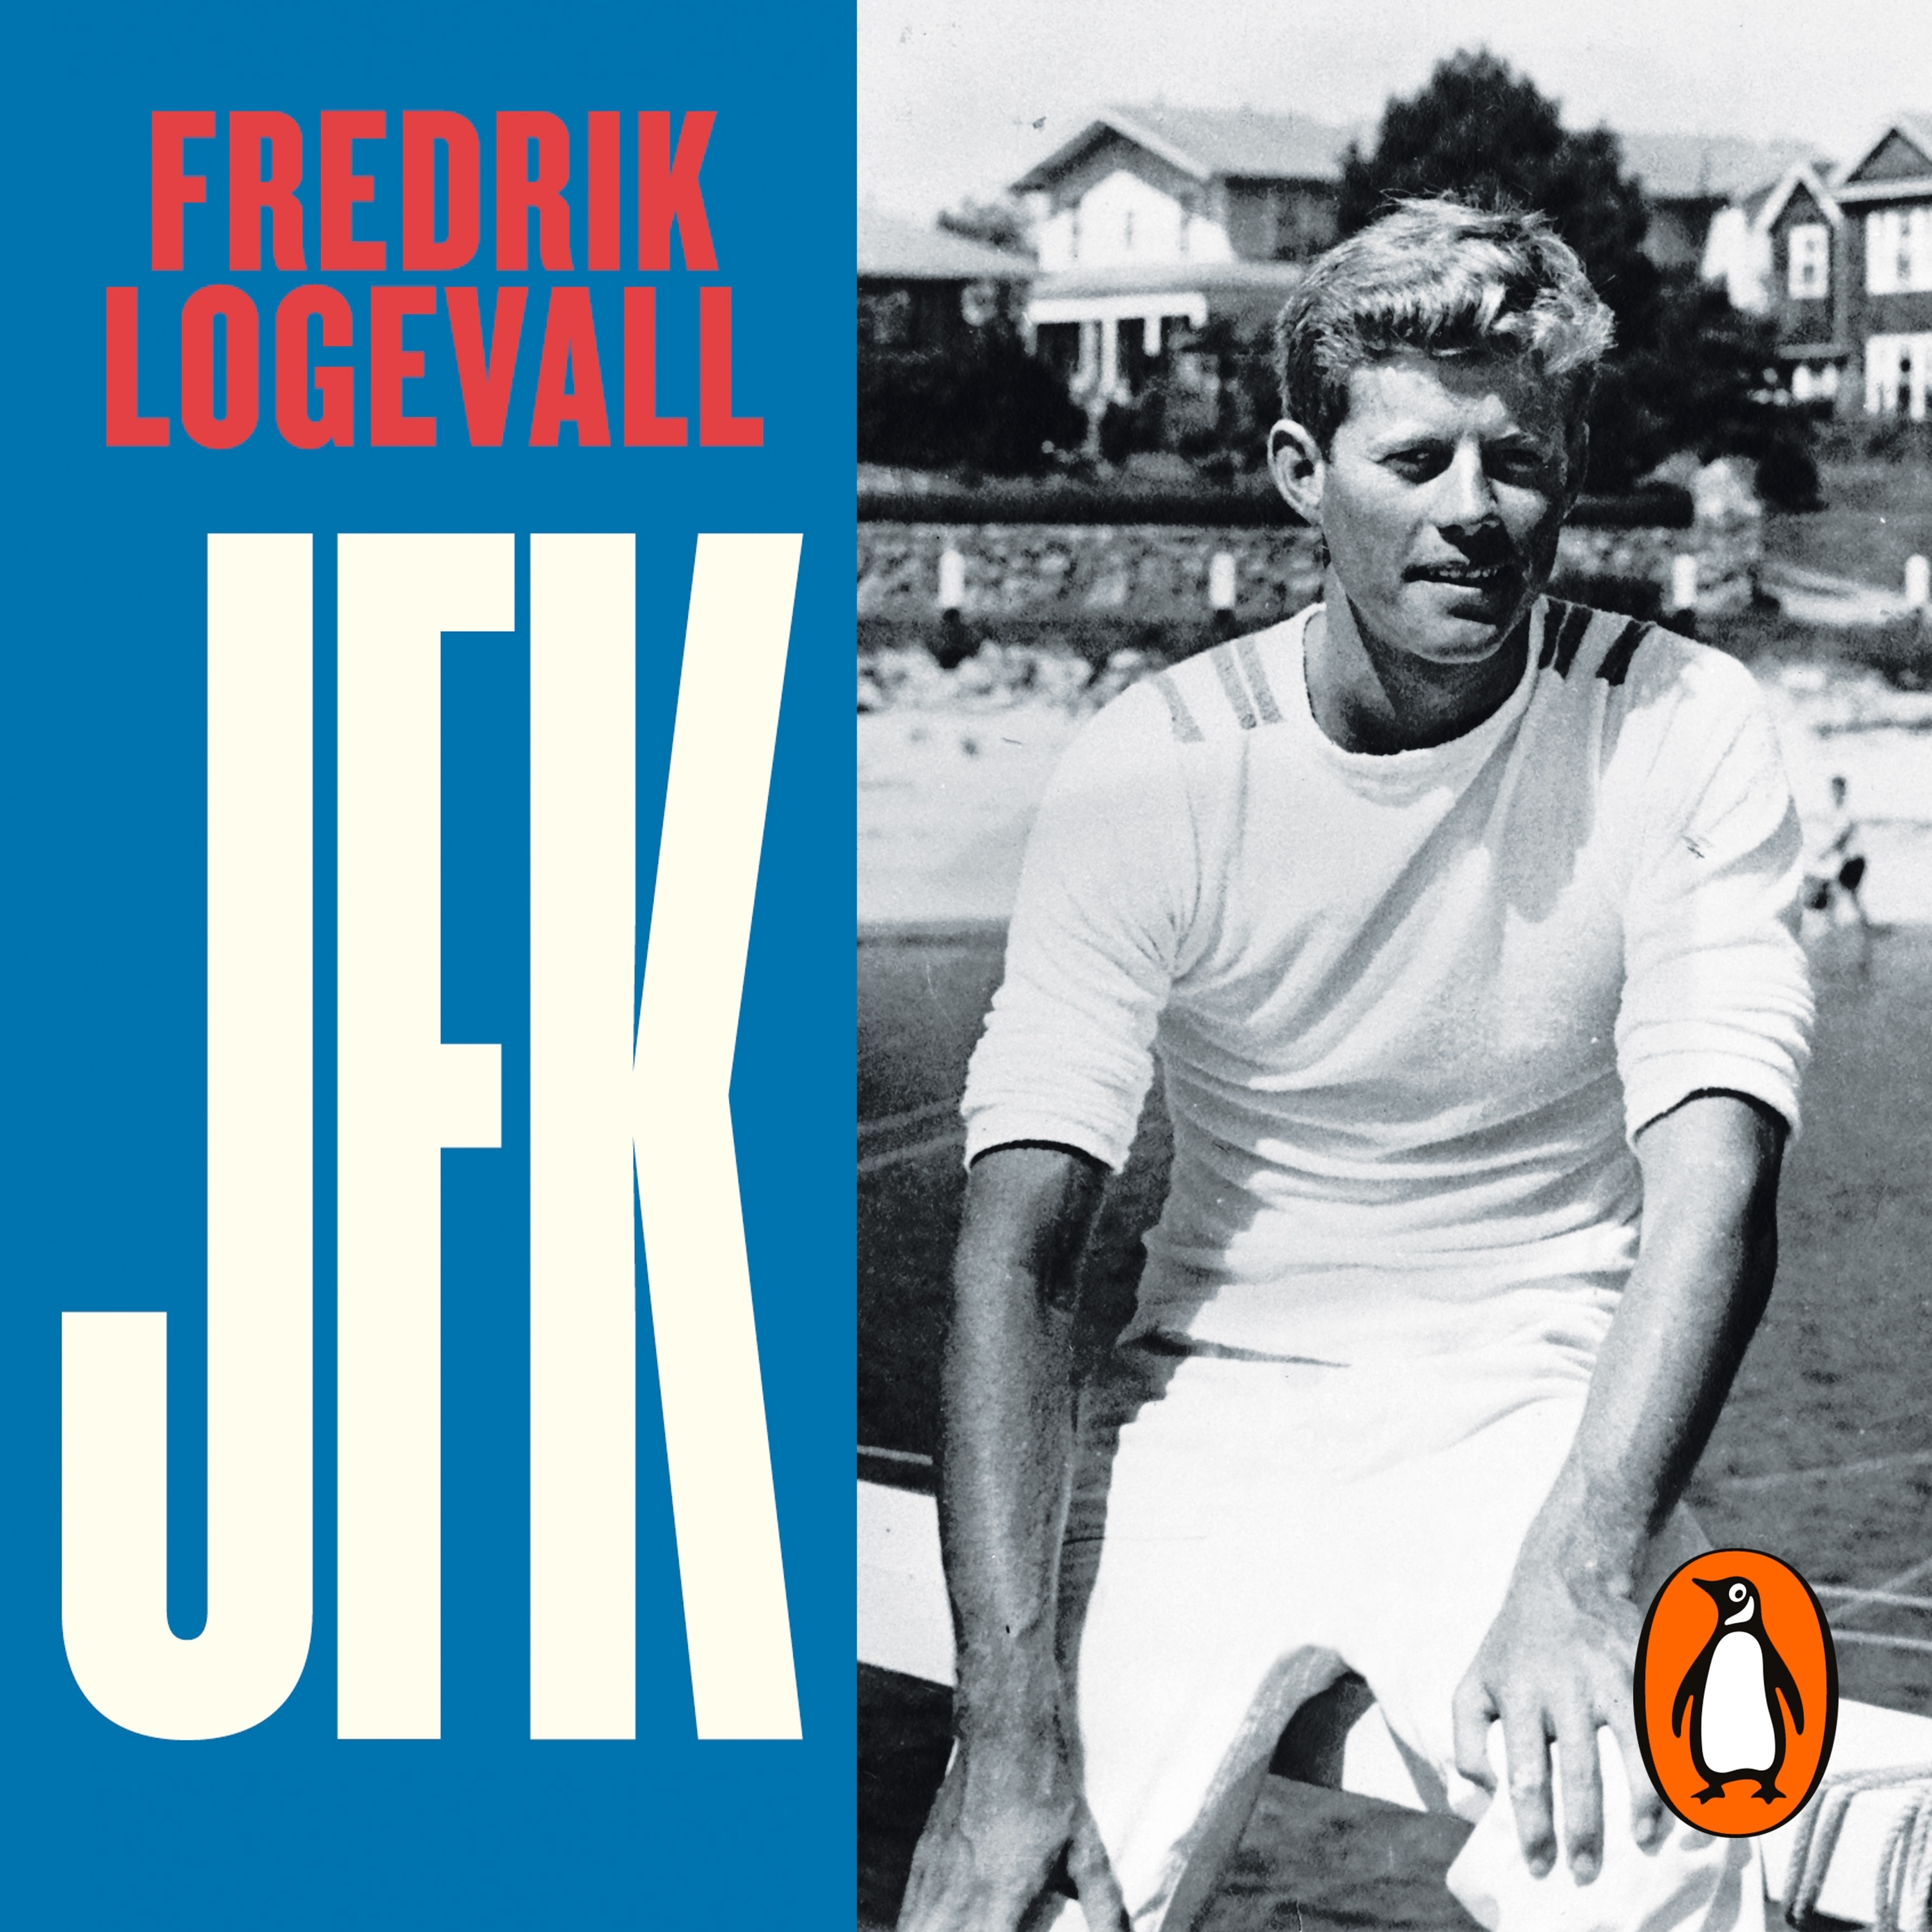 jfk biography fredrik logevall